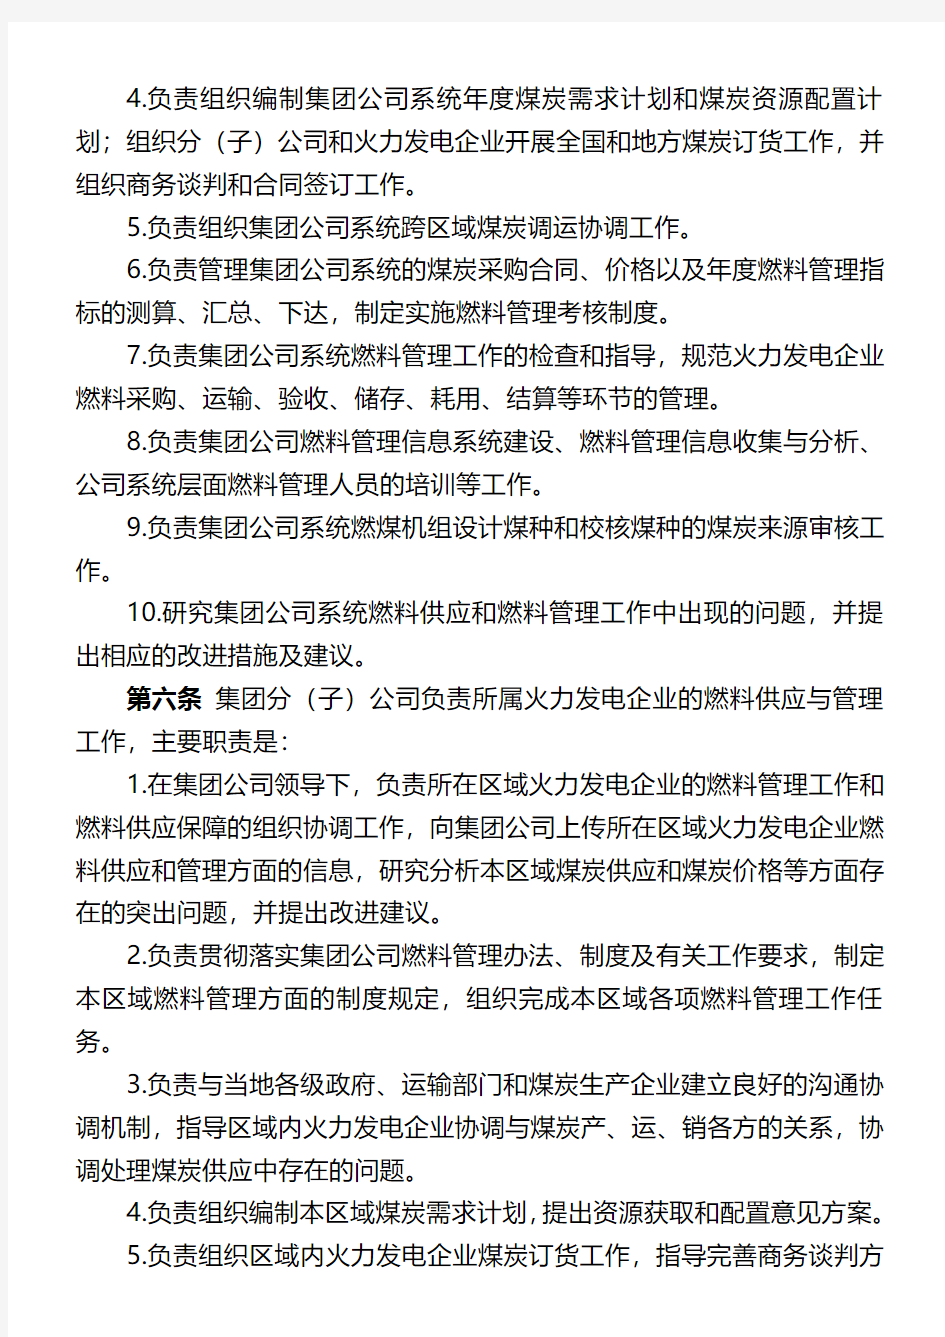 中国国电集团公司燃料管理办法(暂行)